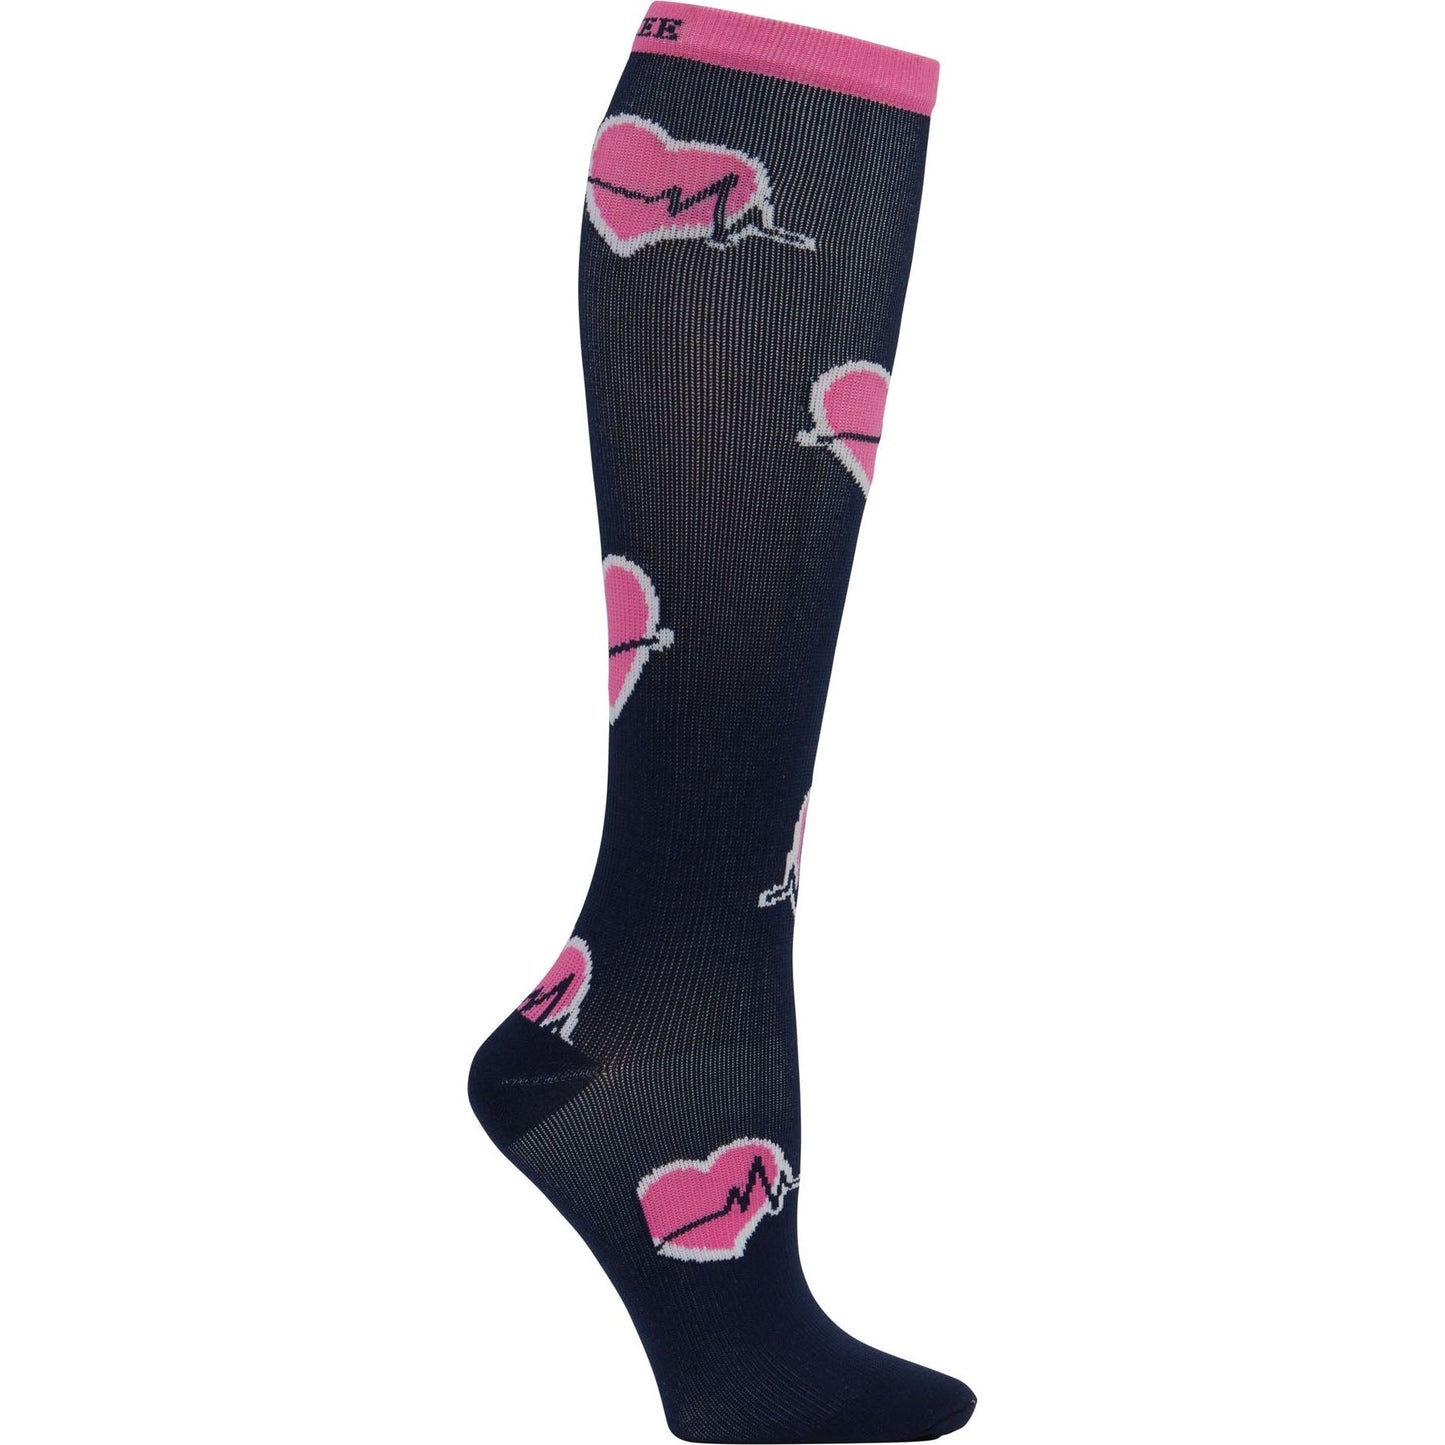 Women's 10-15mmHg Support Socks